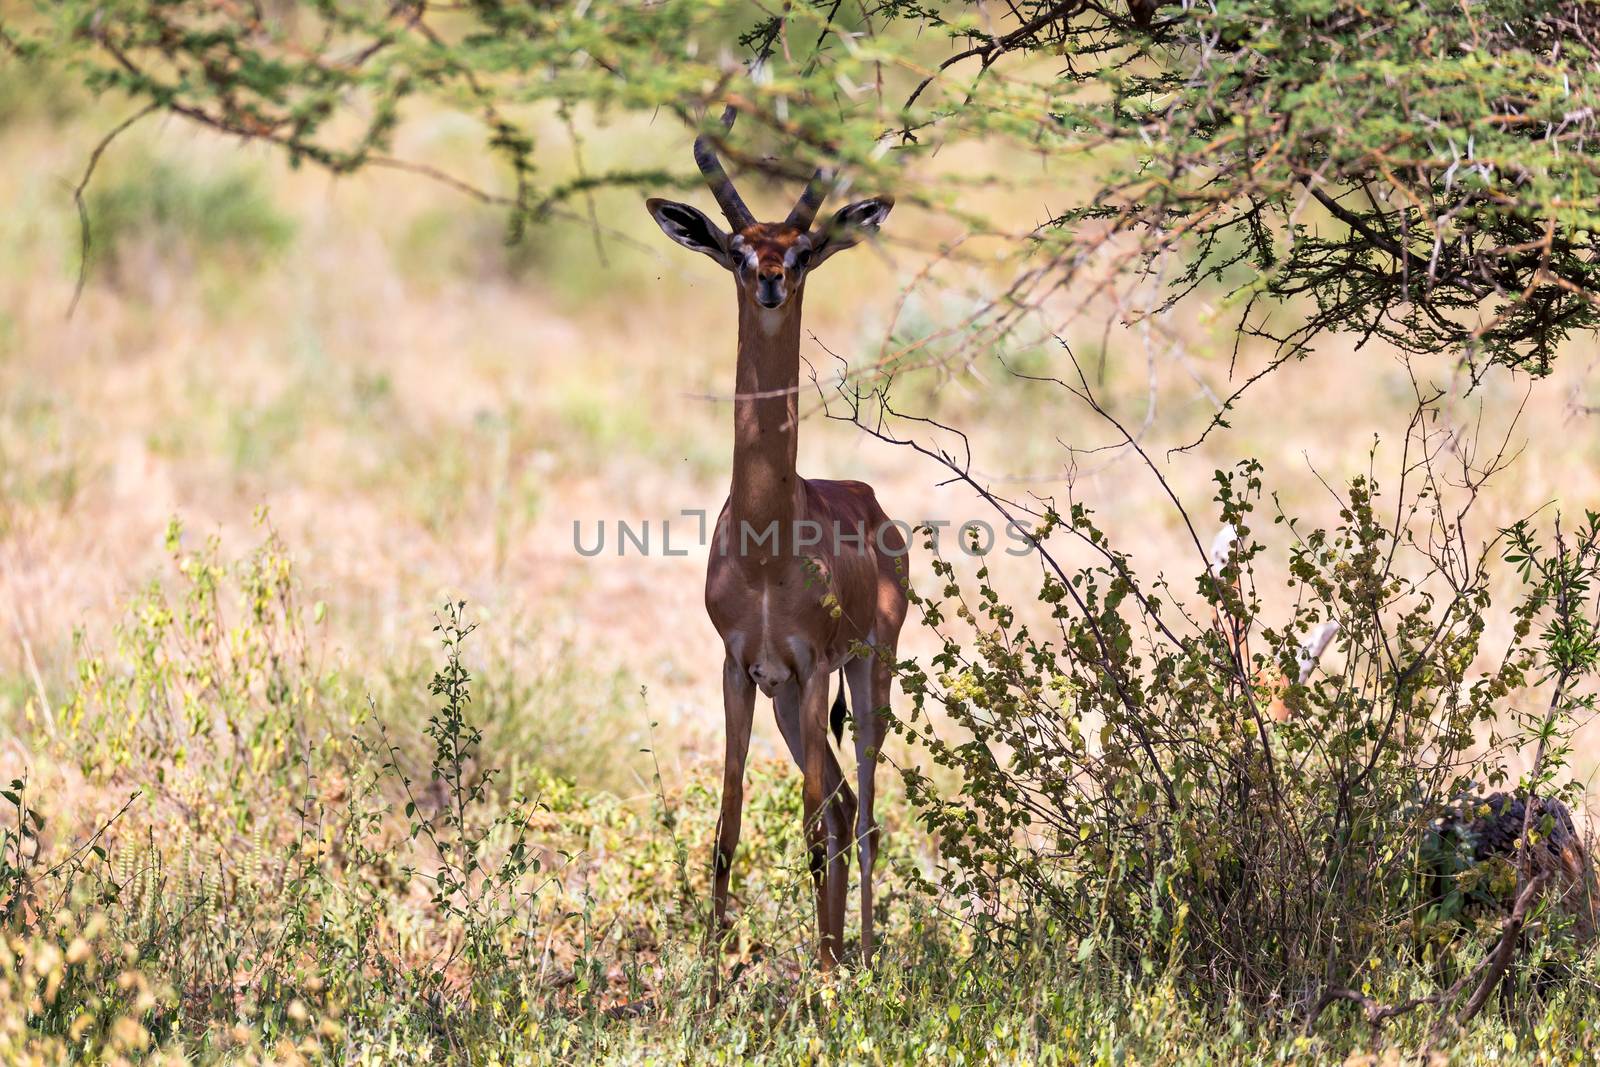 A gerenuk between the plants in the savannah by 25ehaag6